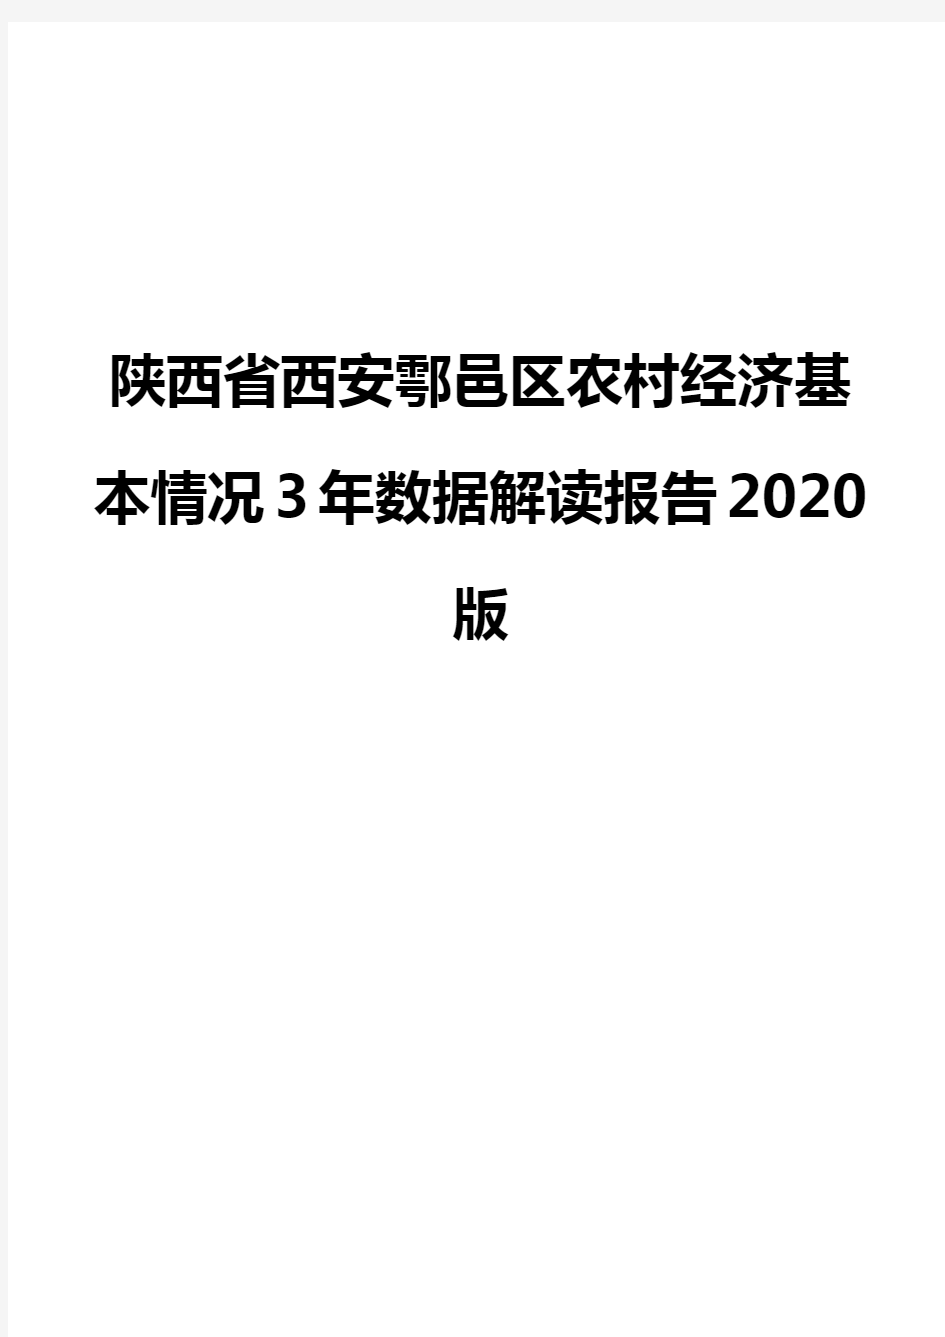 陕西省西安鄠邑区农村经济基本情况3年数据解读报告2020版